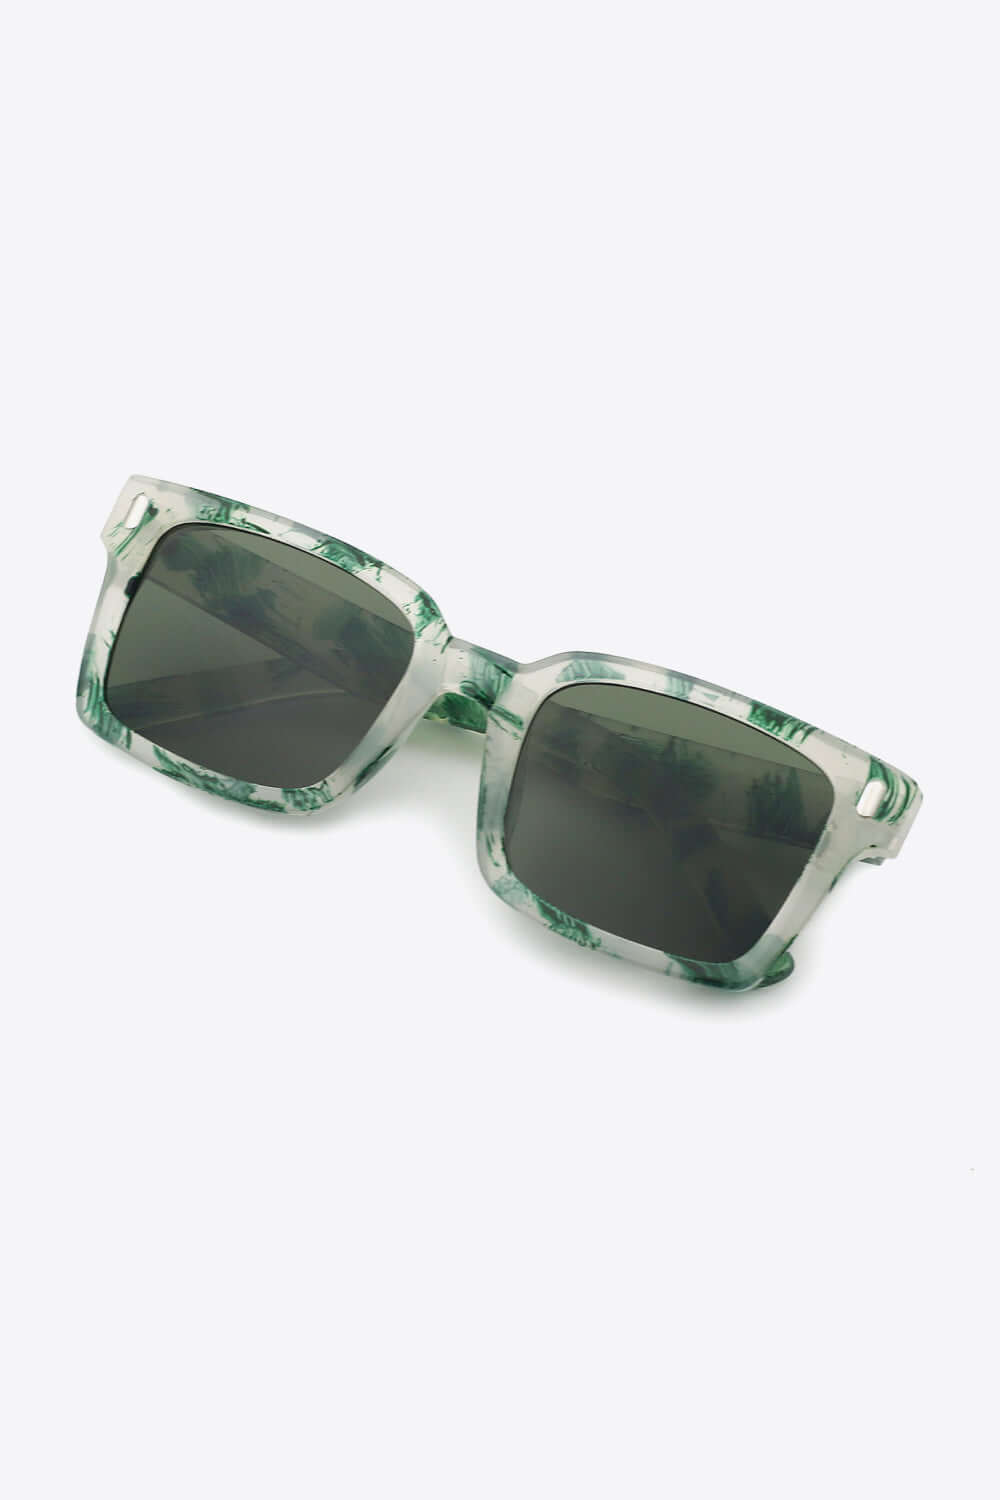 Protect UV400 Polycarbonate Square Sunglasses - Samslivos